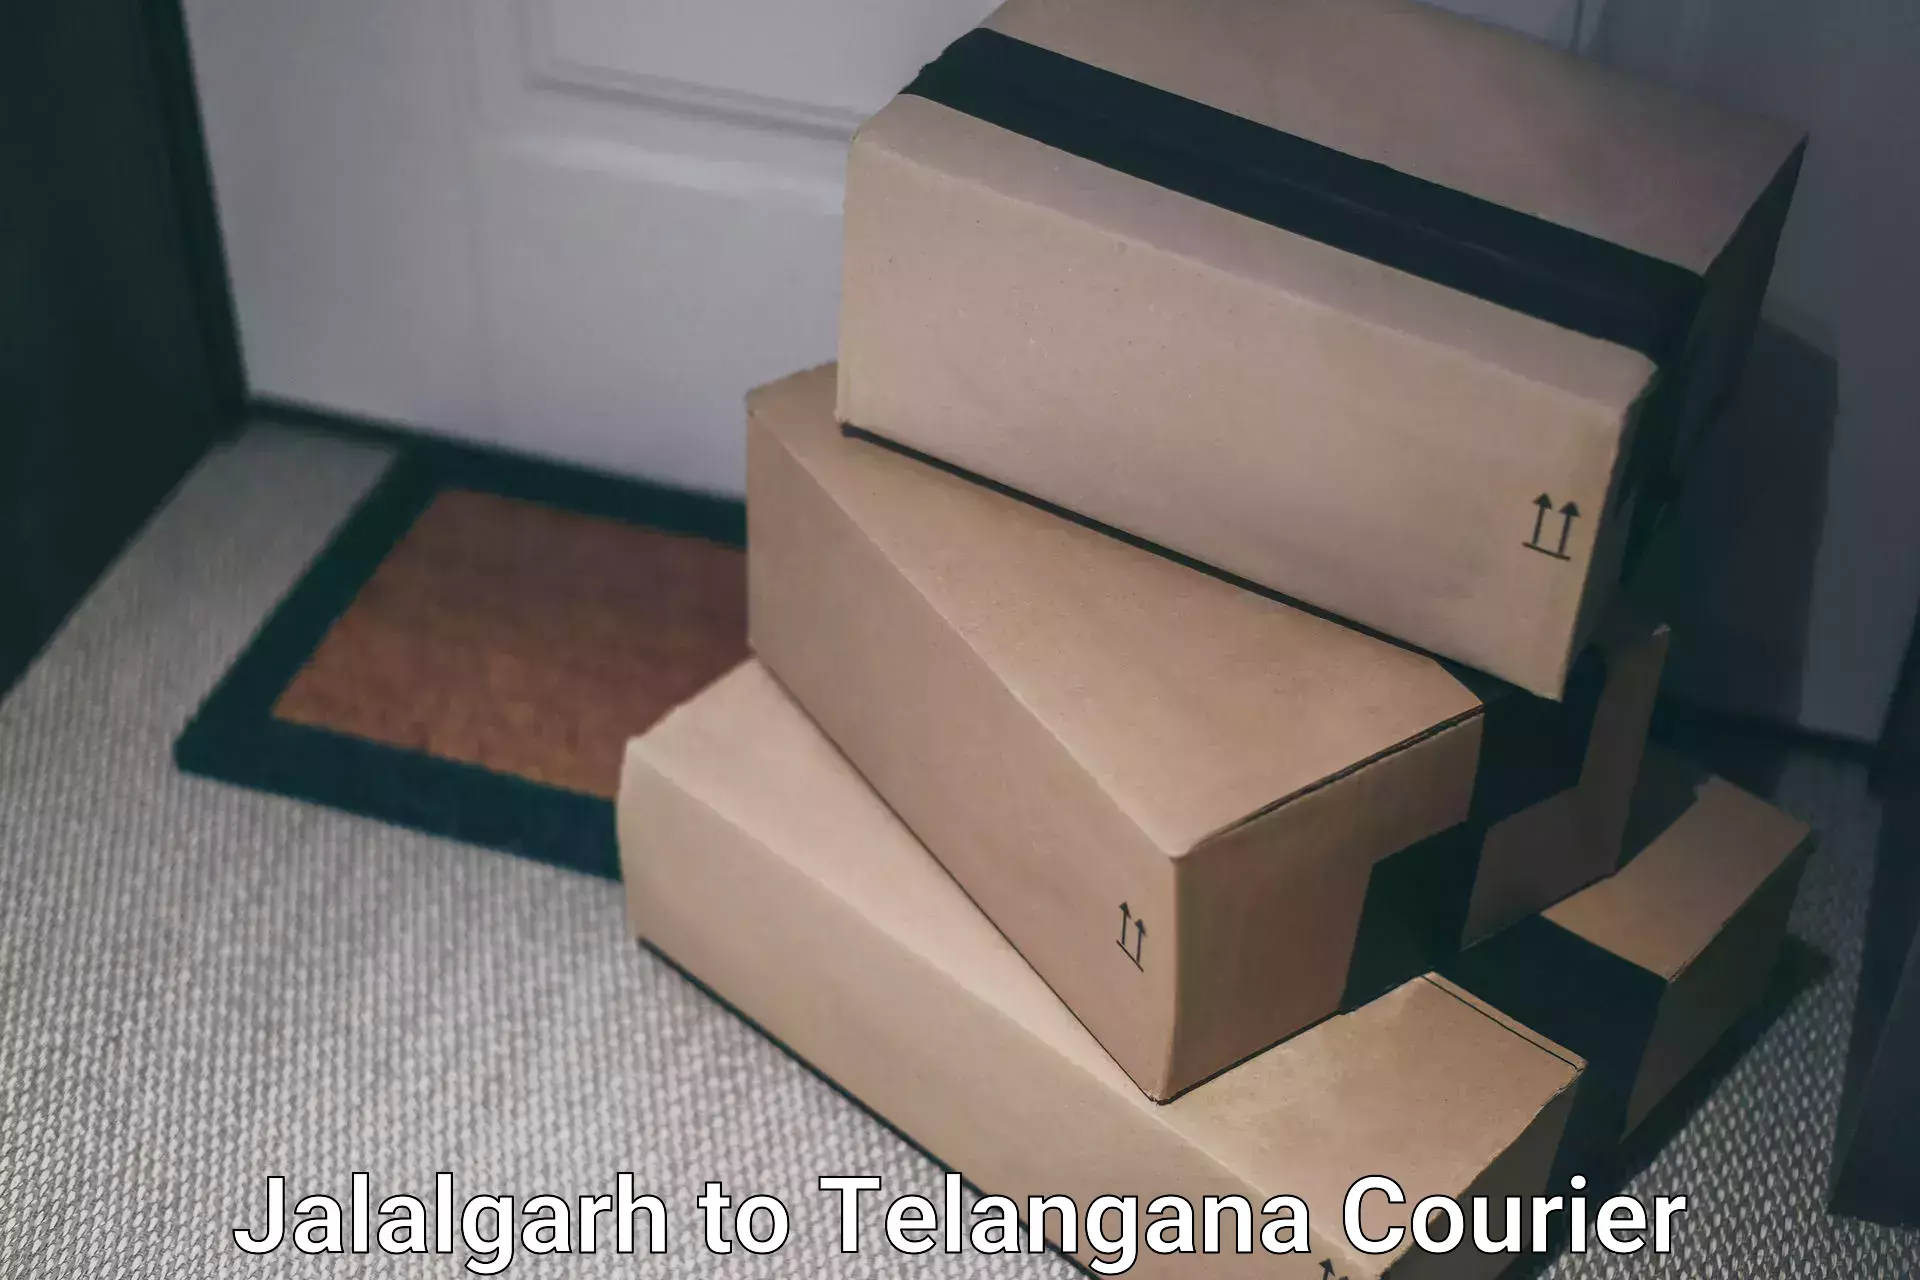 Express courier facilities Jalalgarh to Telangana